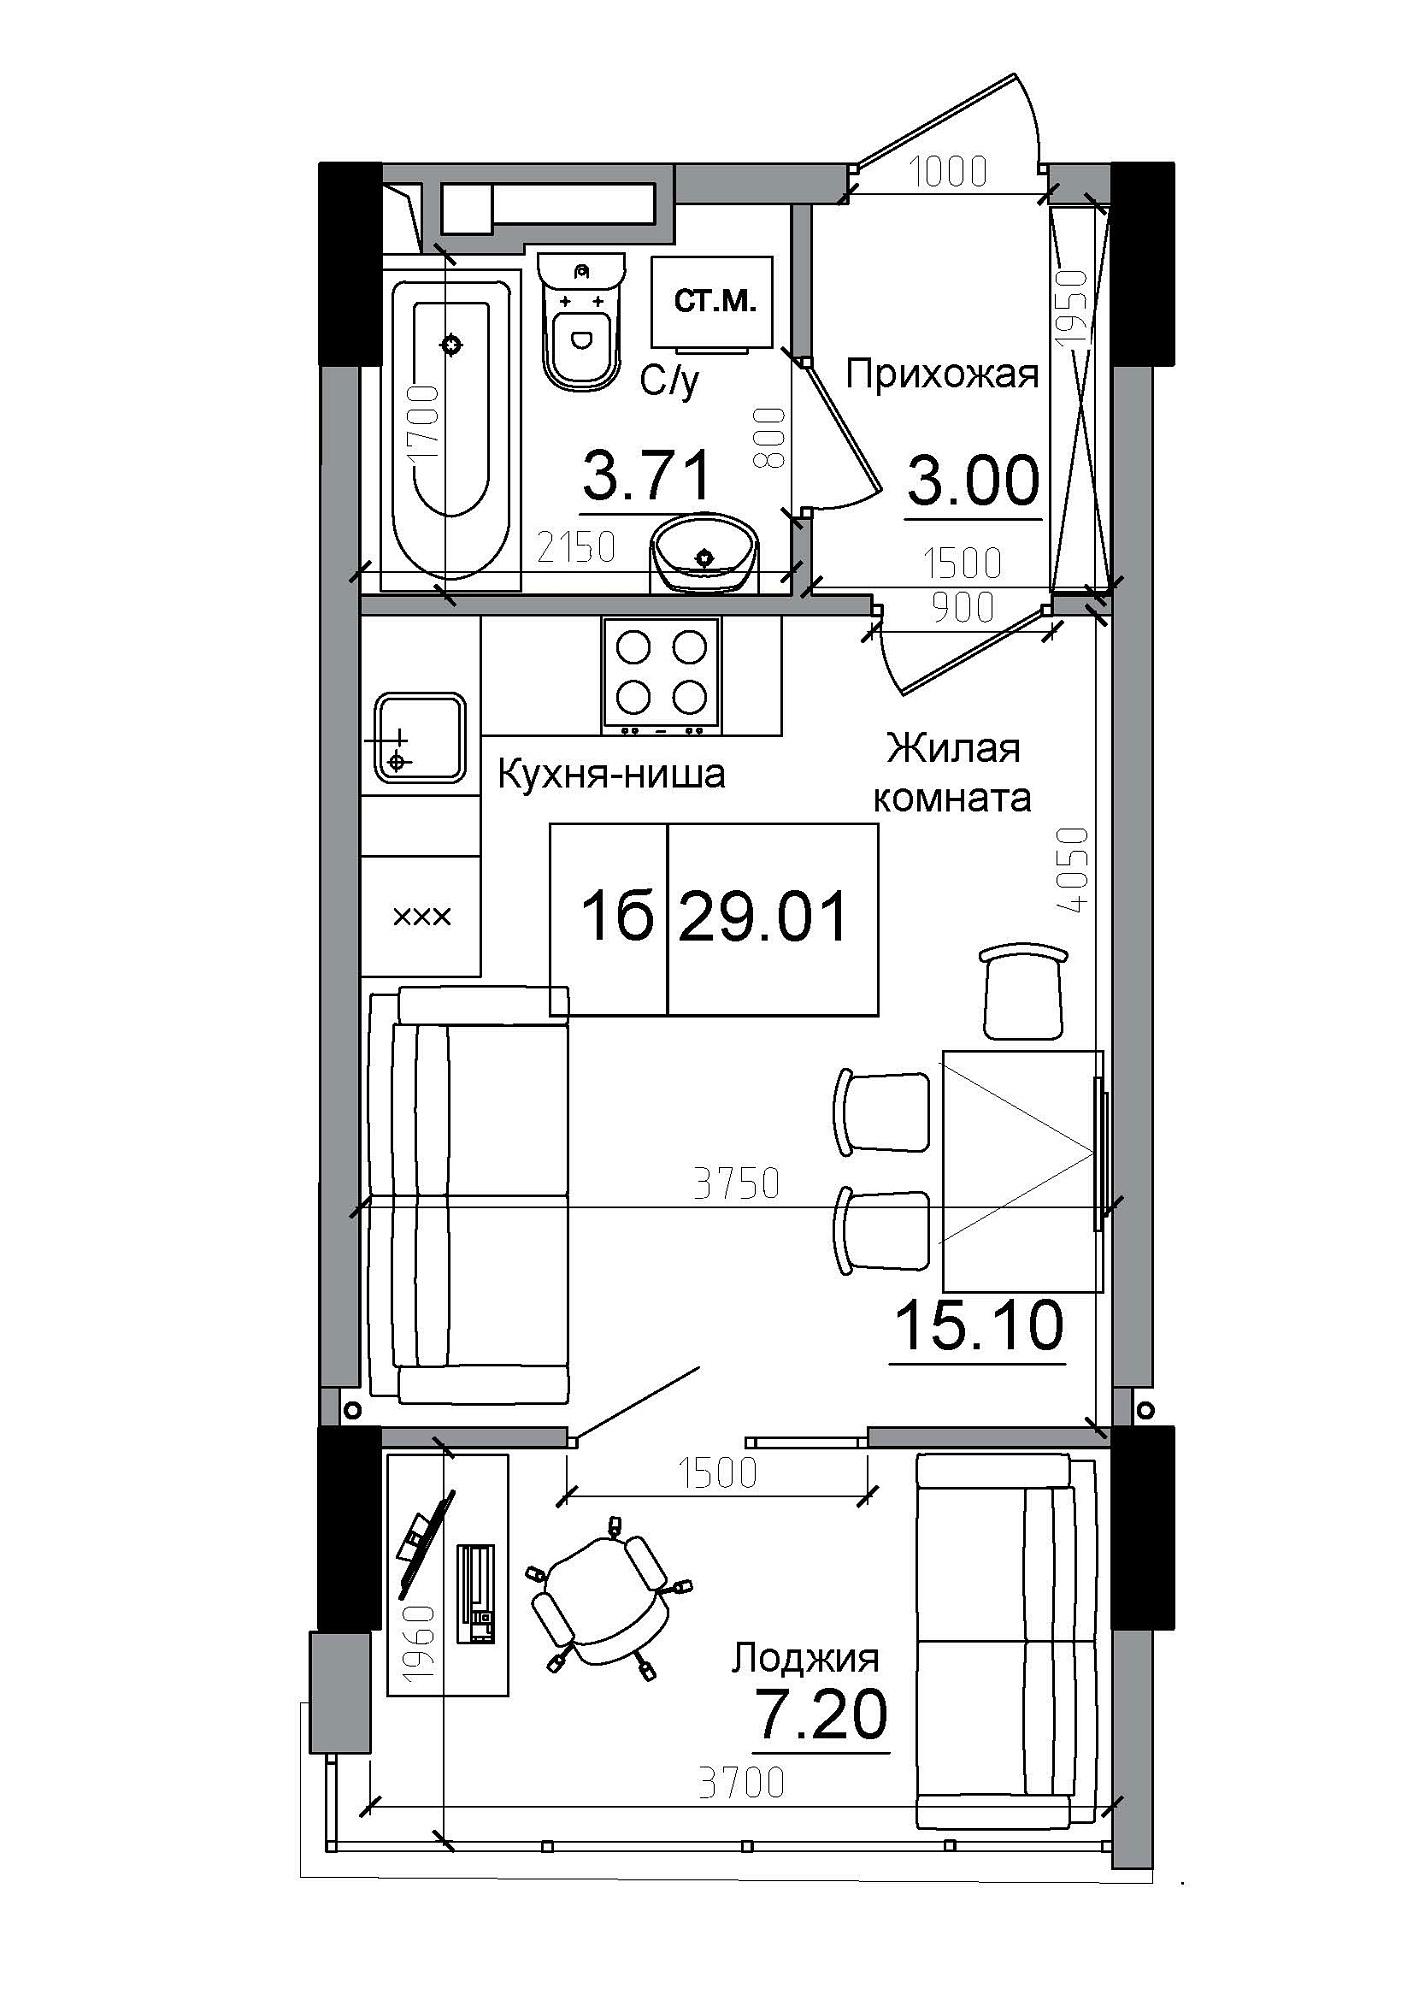 Планування Smart-квартира площею 29.01м2, AB-12-08/00002.